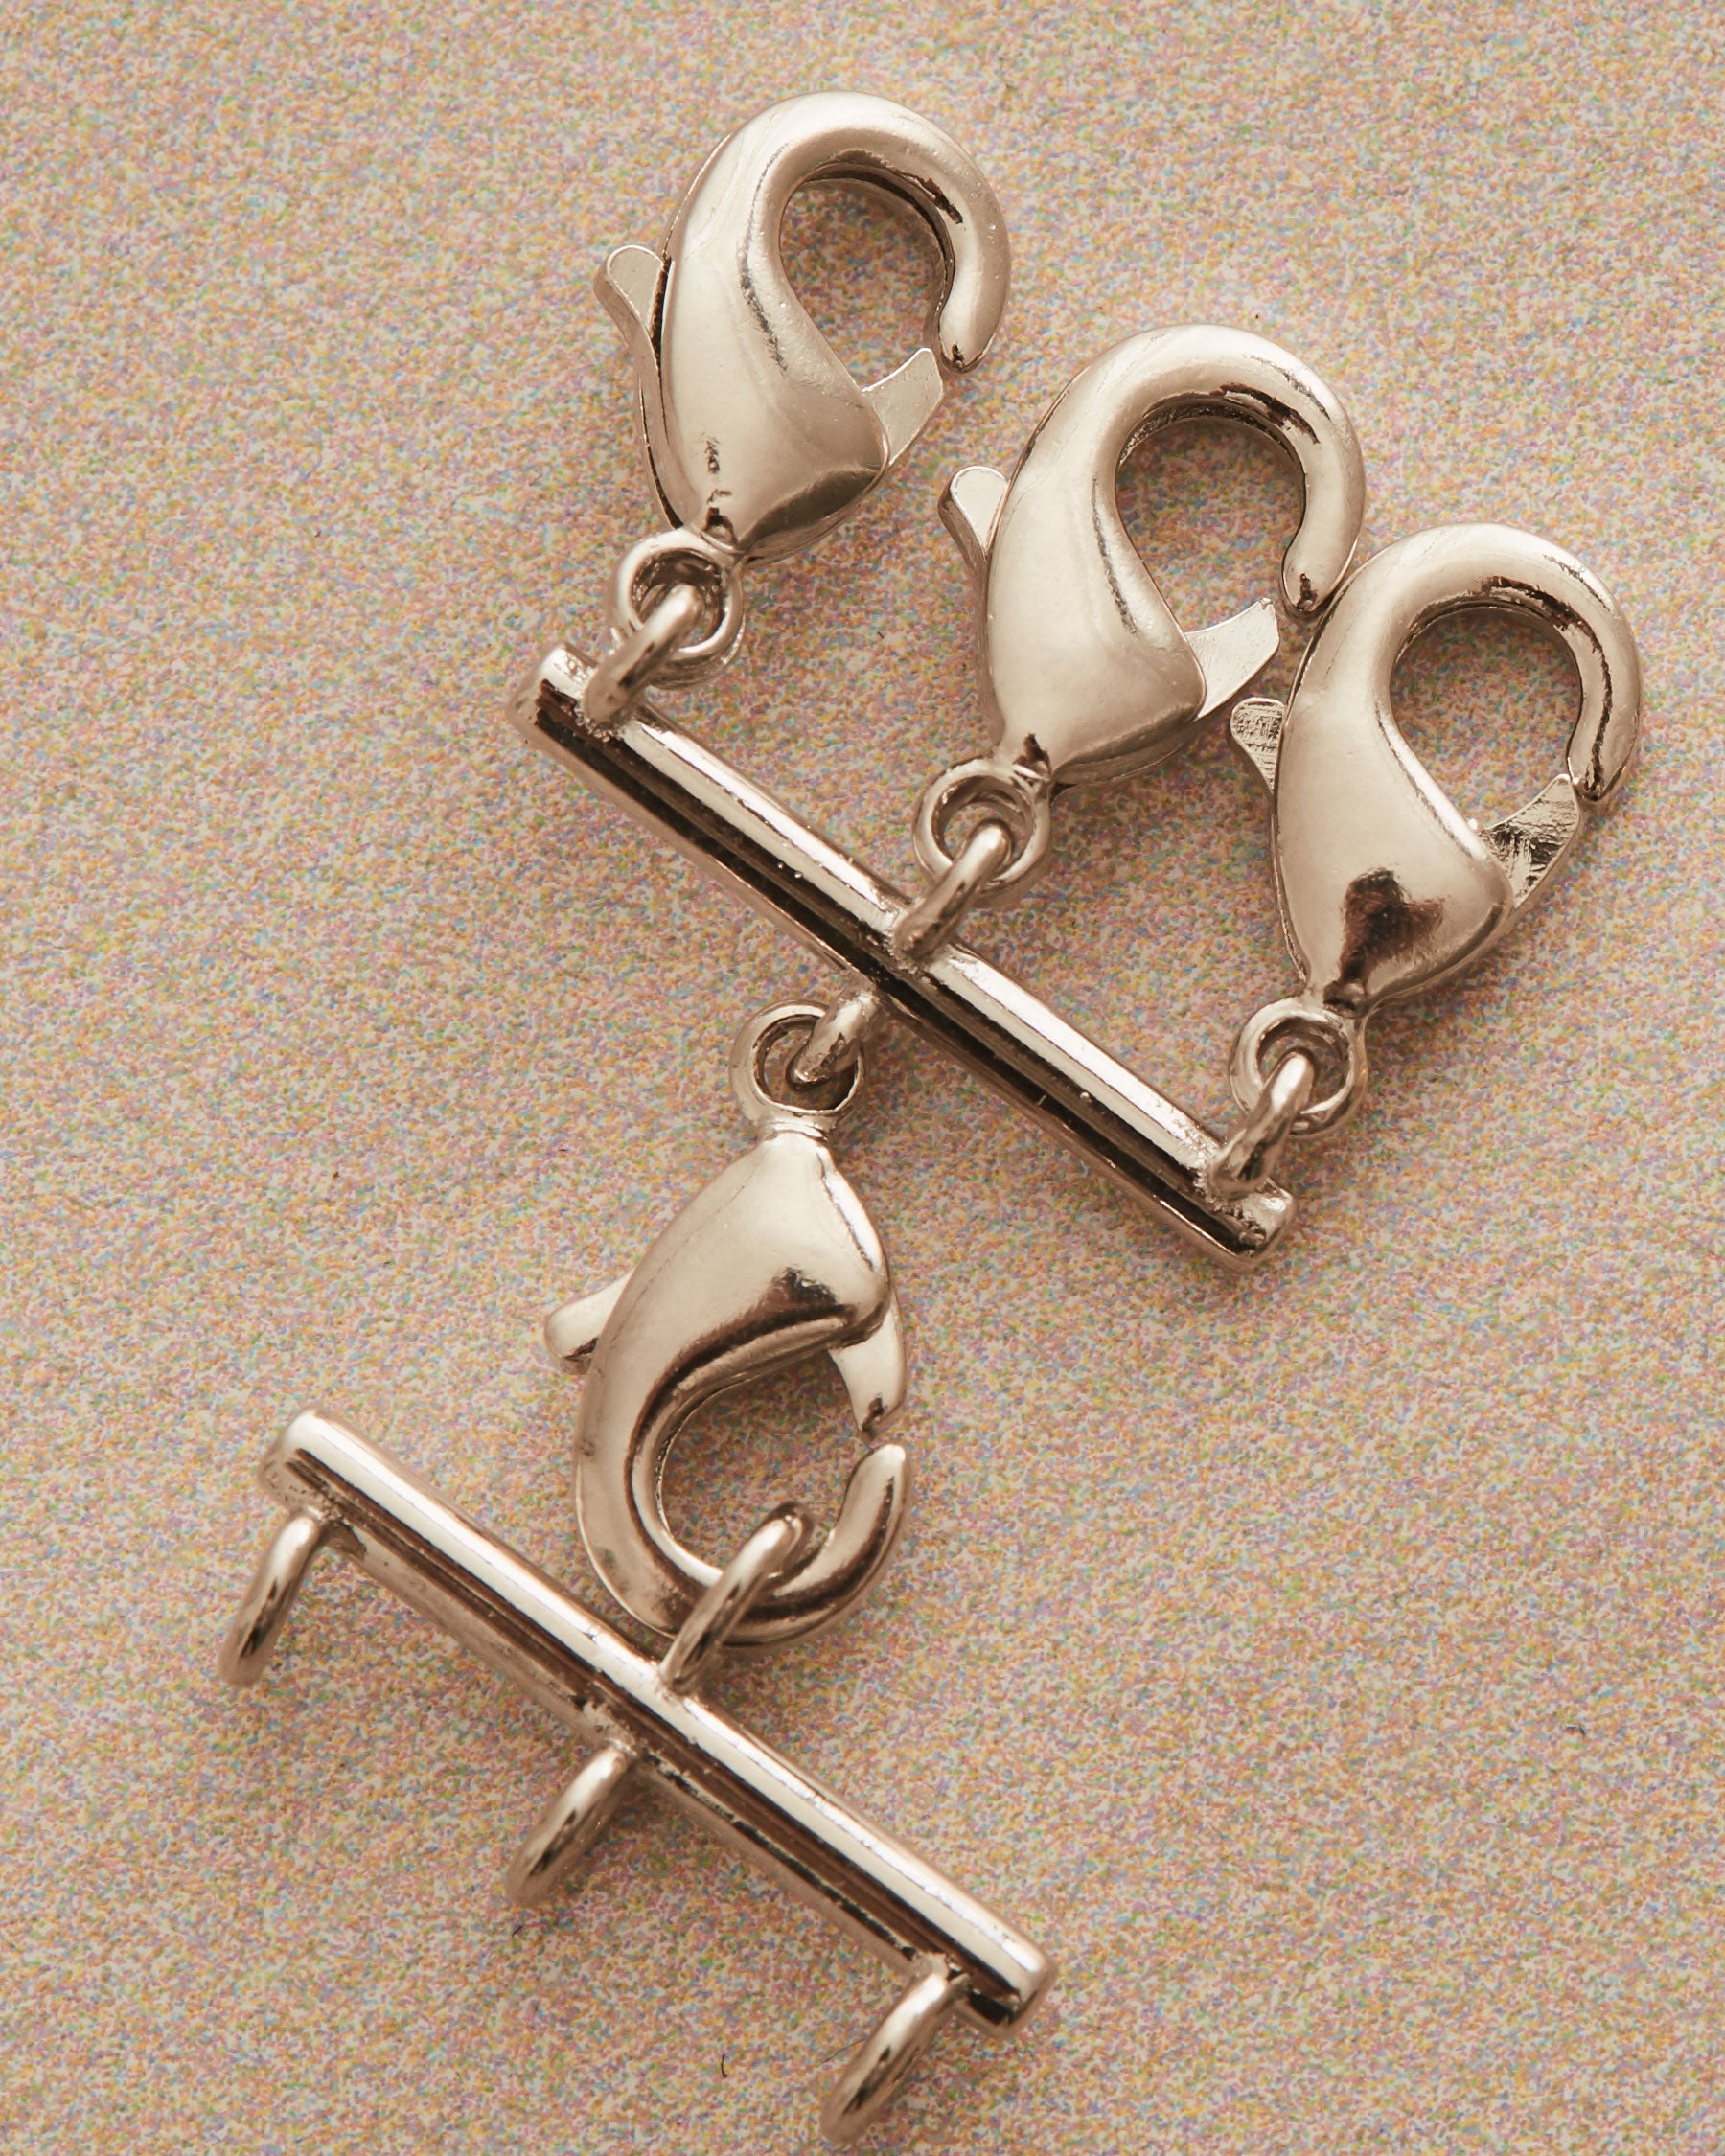 Multi Necklaces Accessory